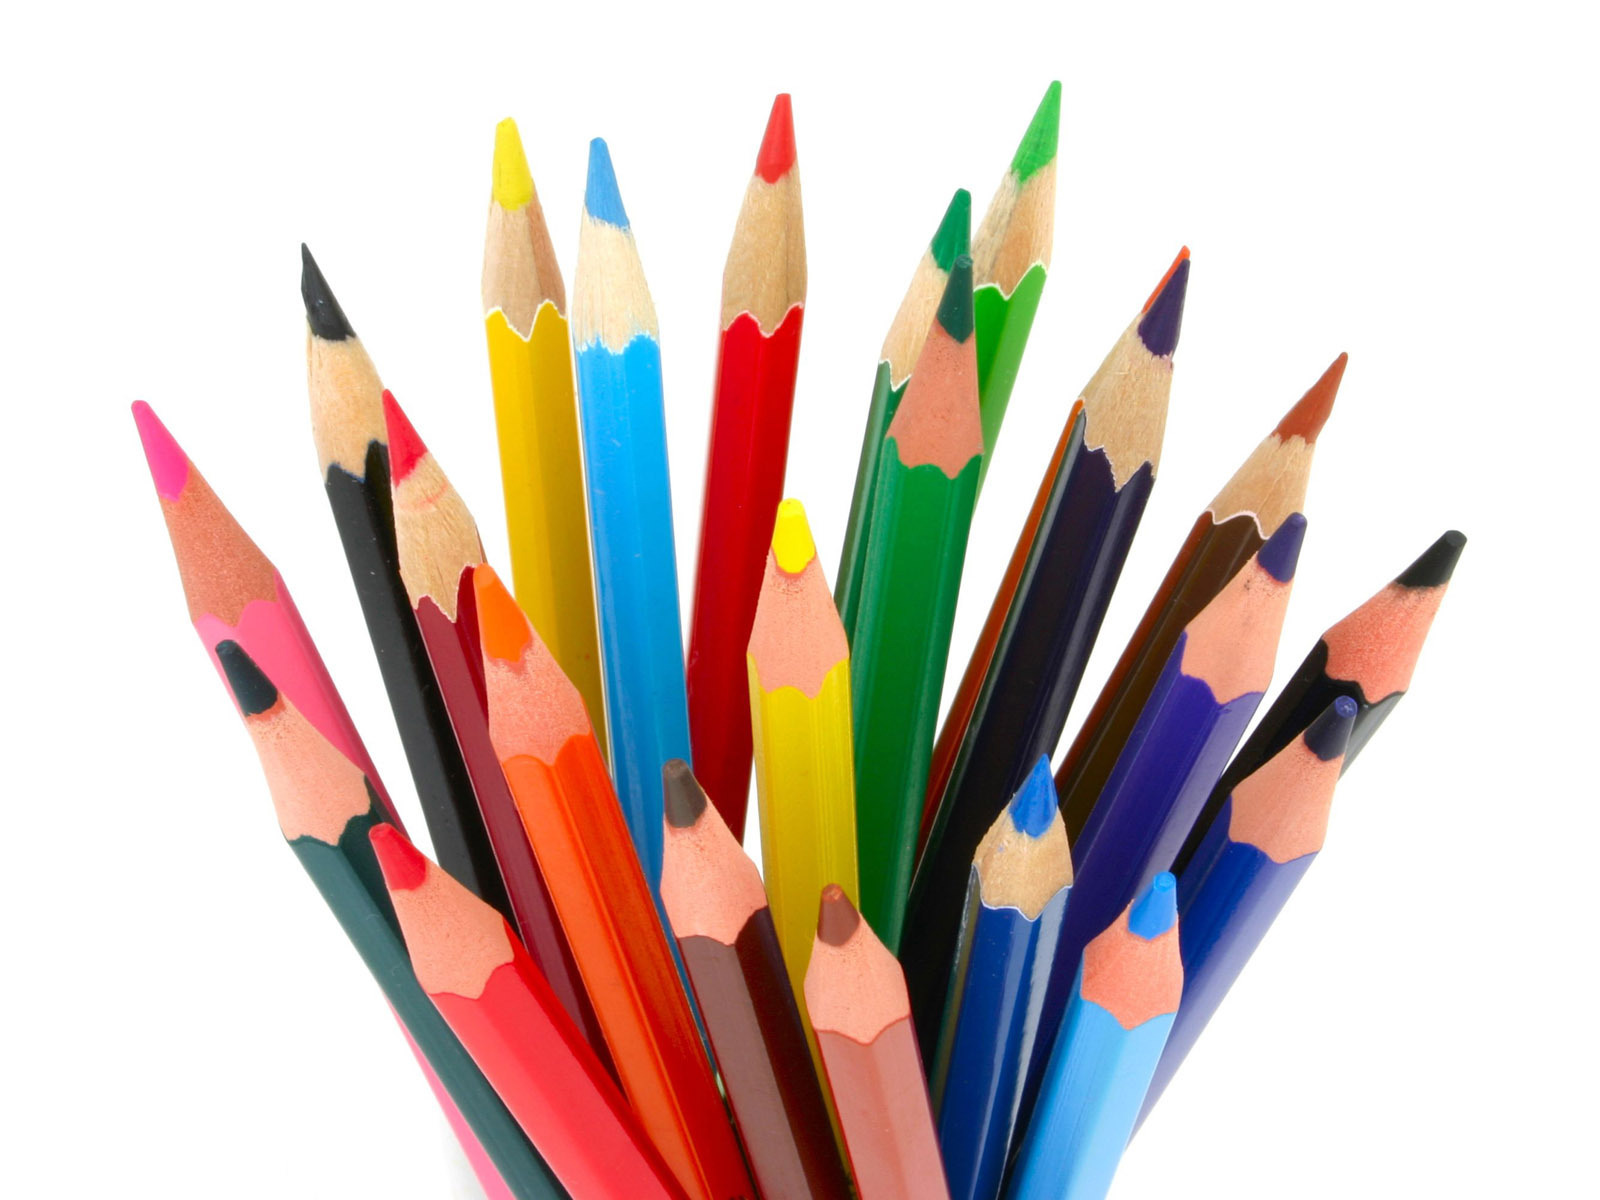 色鉛筆壁紙,鉛筆,事務用品,筆記具,文房具